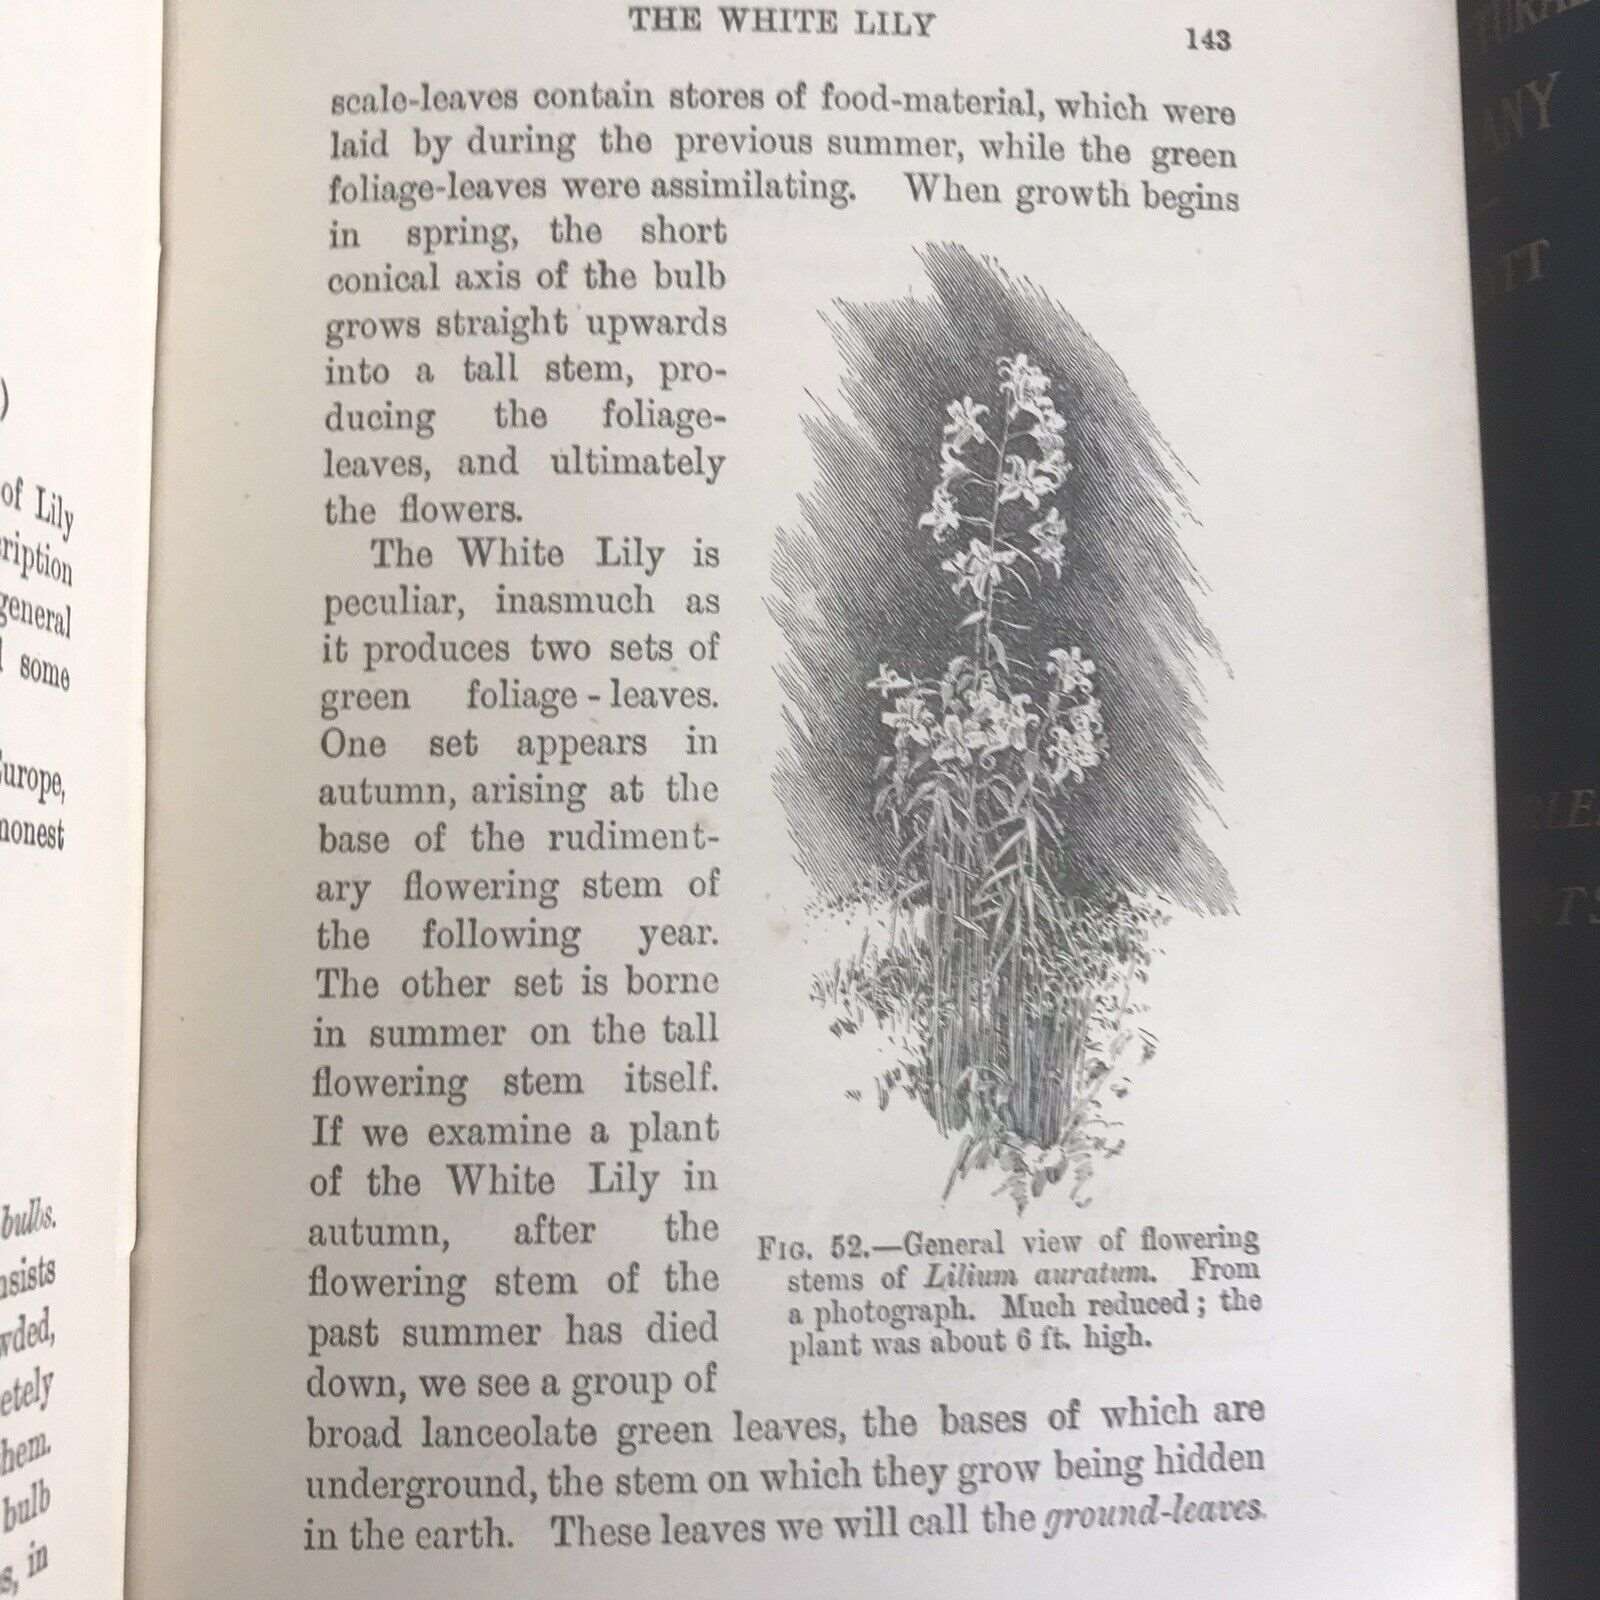 1909 & 1912 Structured Botany Flowering / Flowerless Plants - D. H. Scott (A&C ) Honeyburn Books (UK)